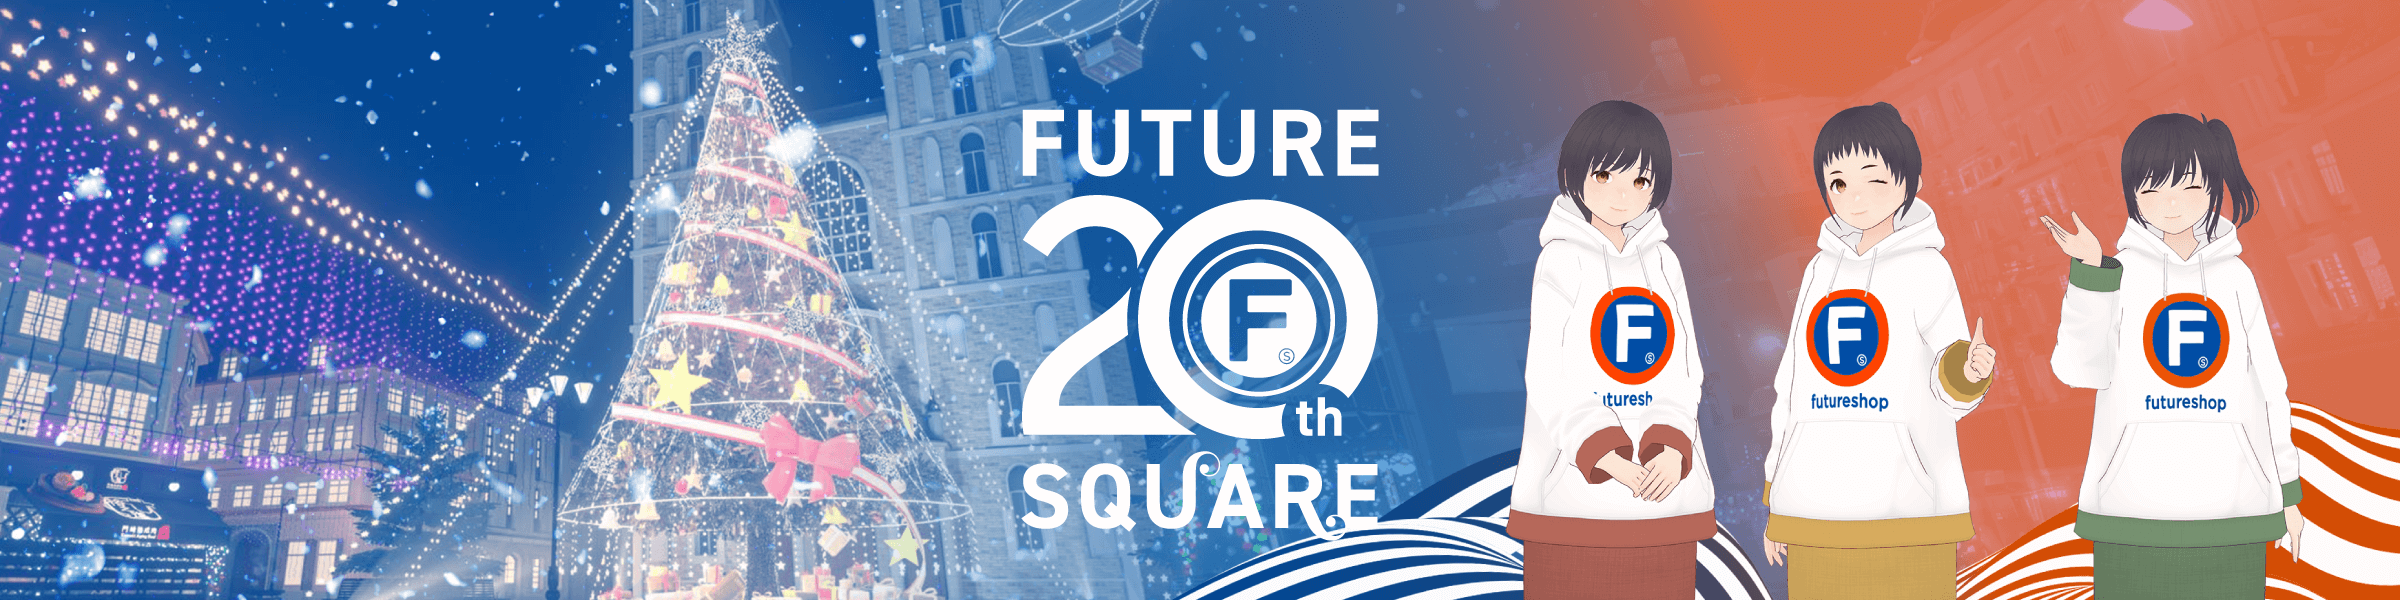 future 20th square 現在ワールド制作中